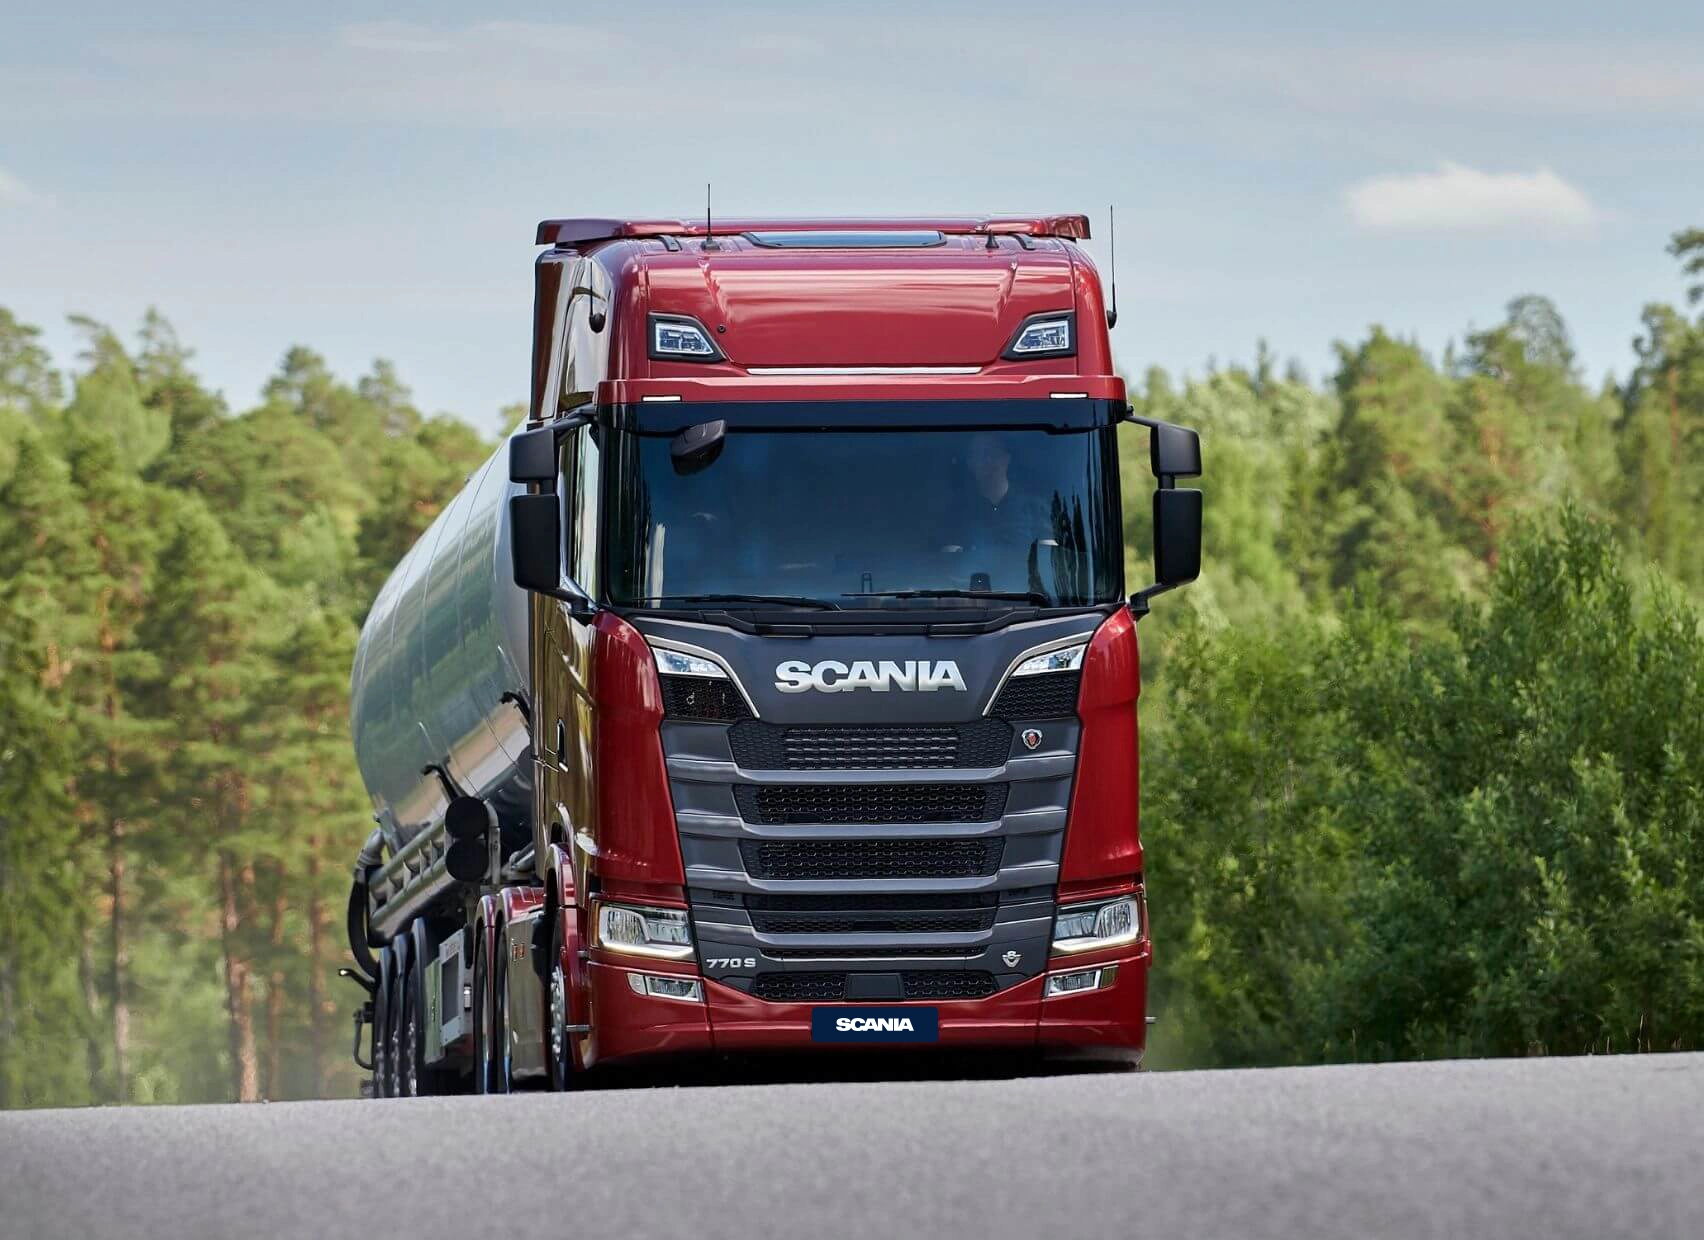 Scania - The Scania V8 770S